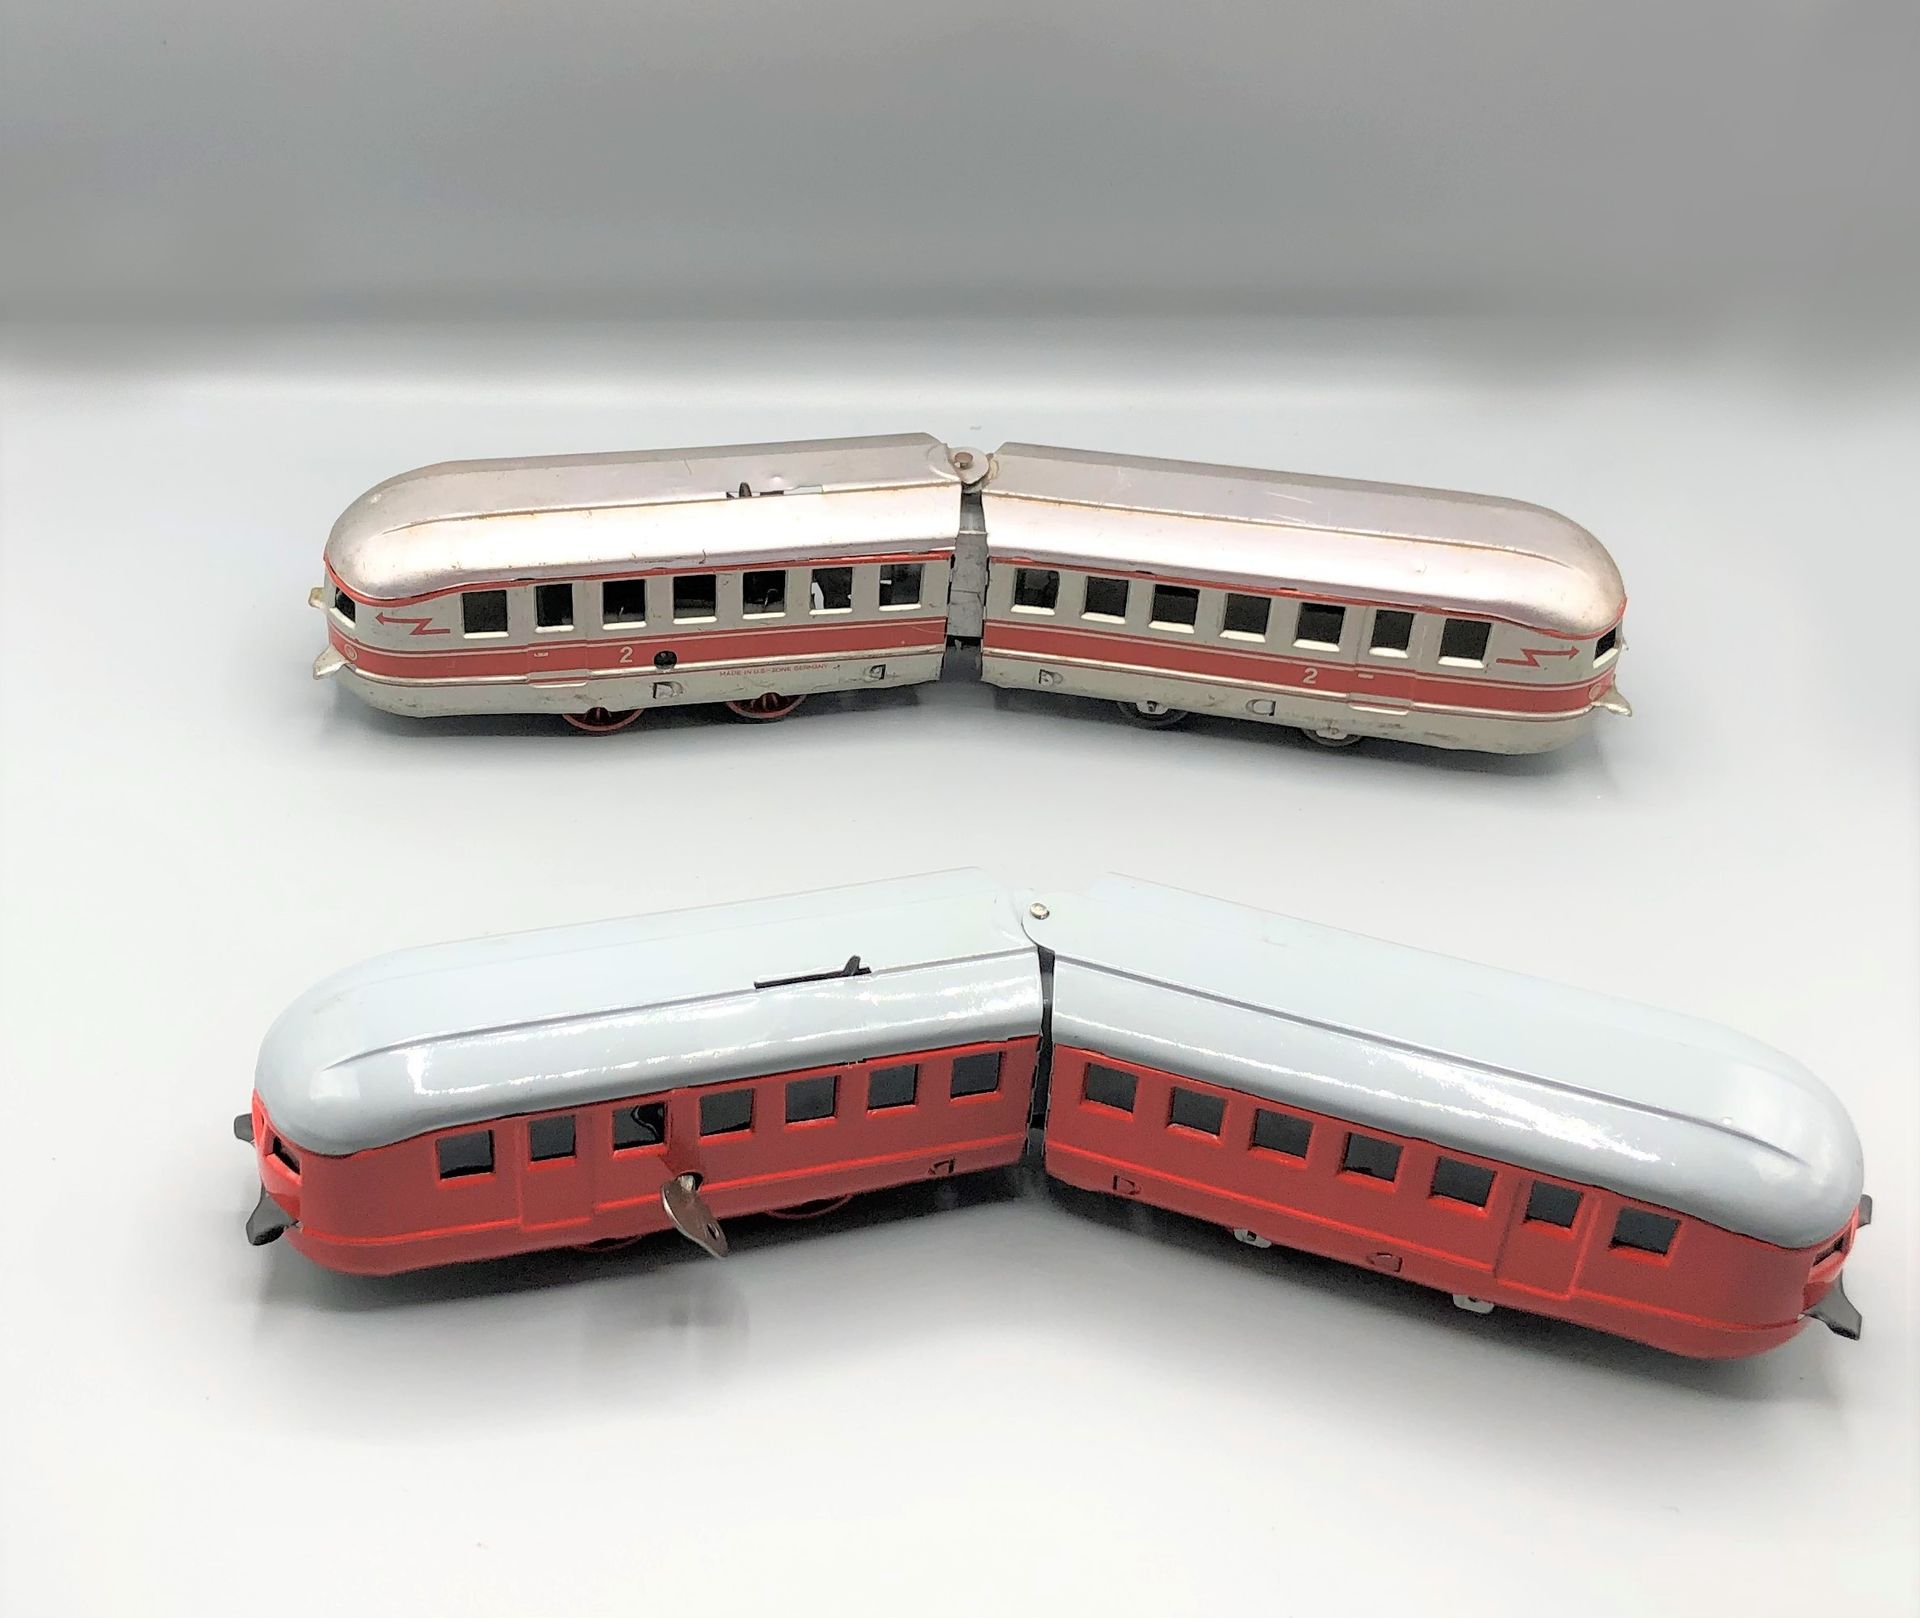 Null 杂项 -0-

机械轨道车，两辆有红色条纹的银色车，机械轨道车，两辆红色车，灰色车顶

1950



使用状况

更多信息请联系该研究。